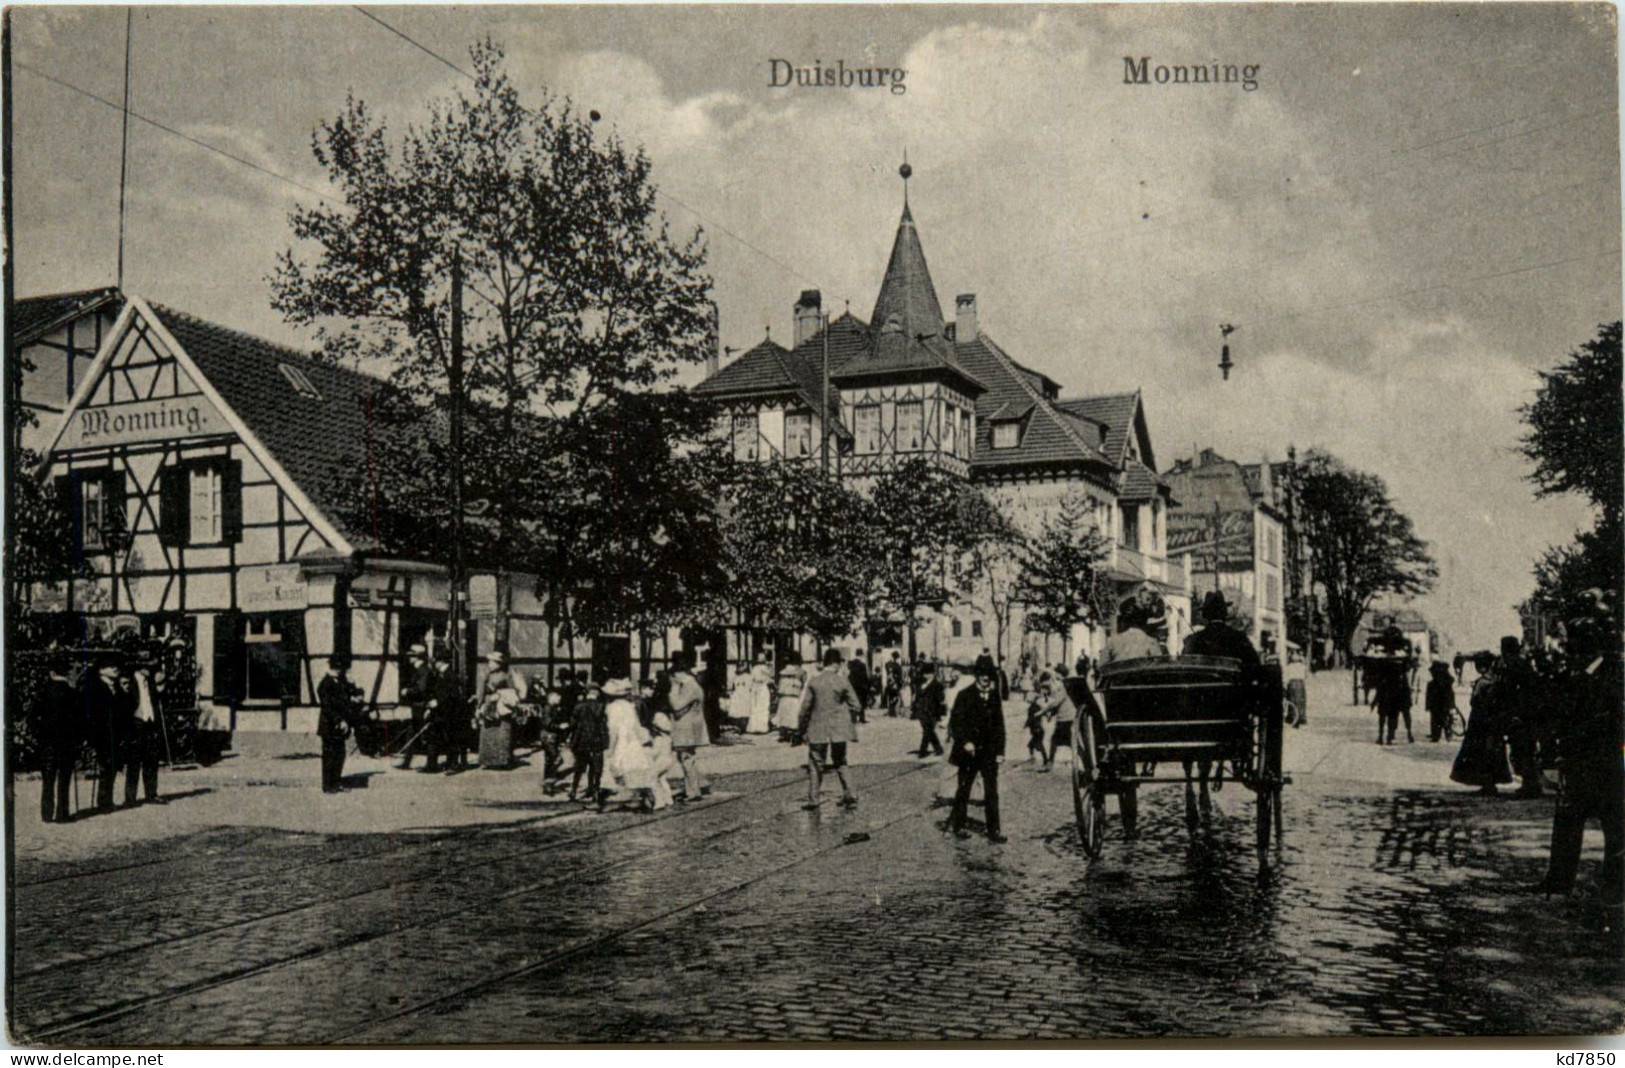 Duisburg - Monning - Duisburg